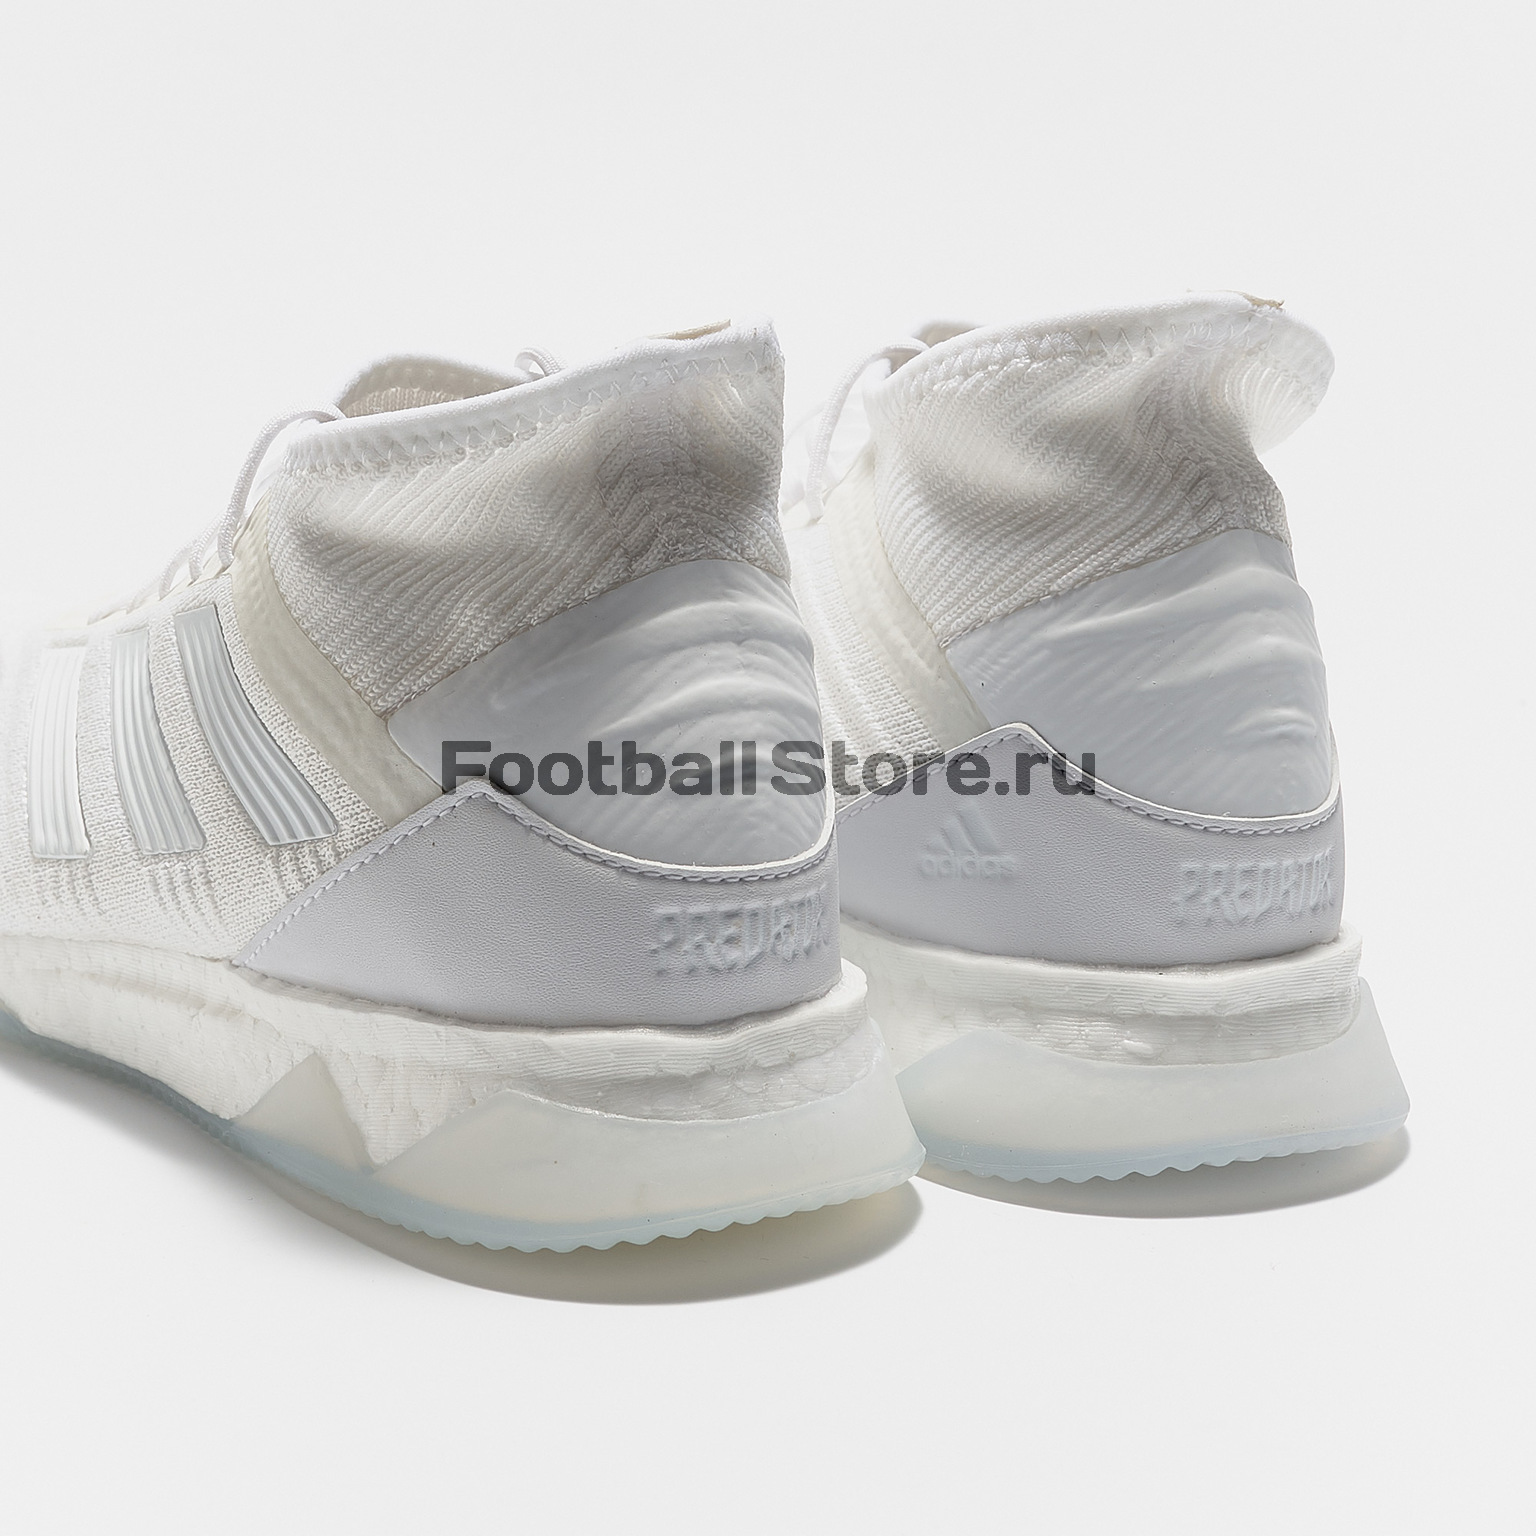 Футбольная обувь Adidas Predator 19.1 TR BC0556